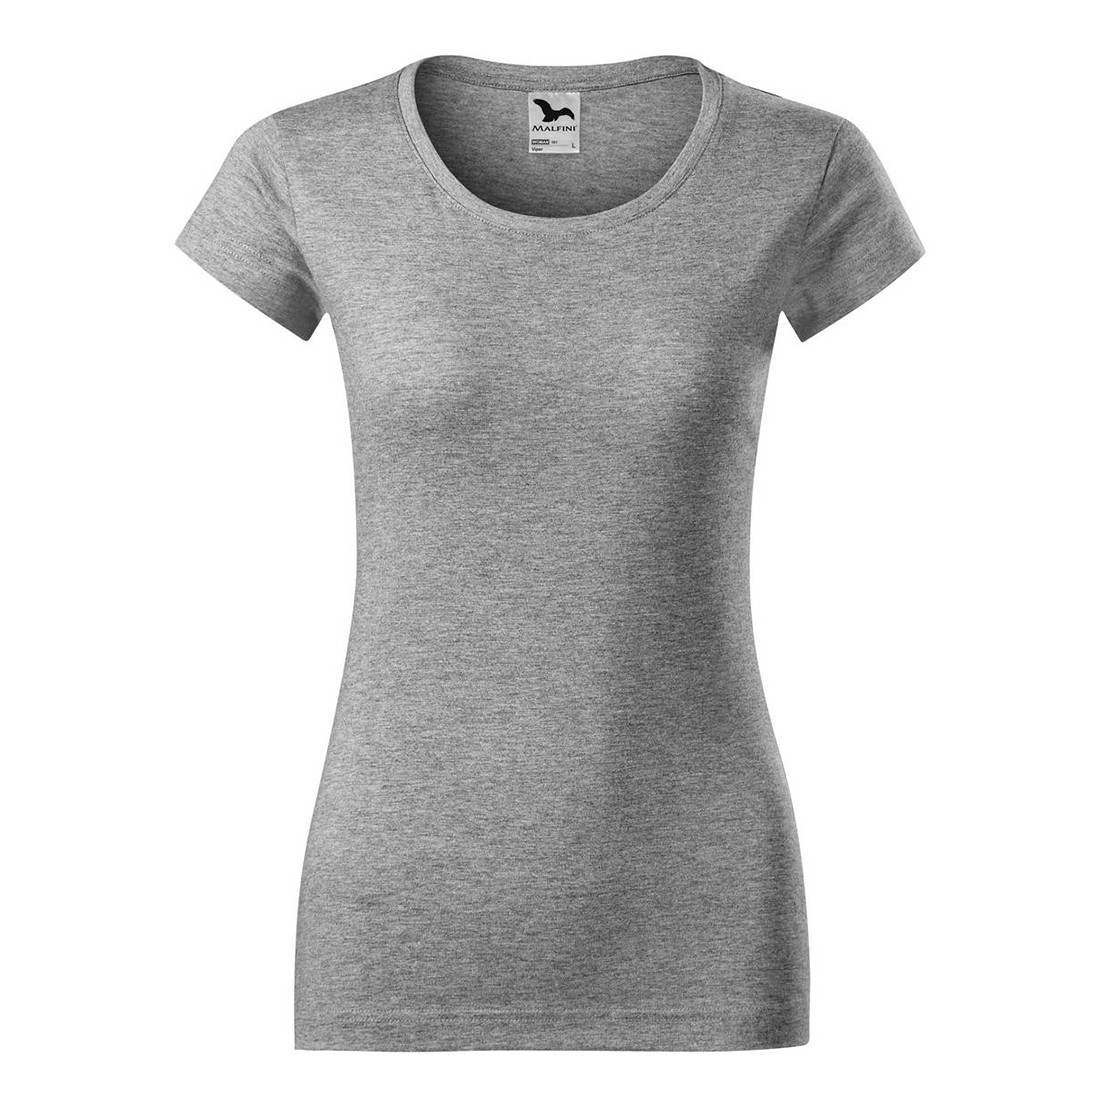 T-shirt Ladies VIPER - Safetywear